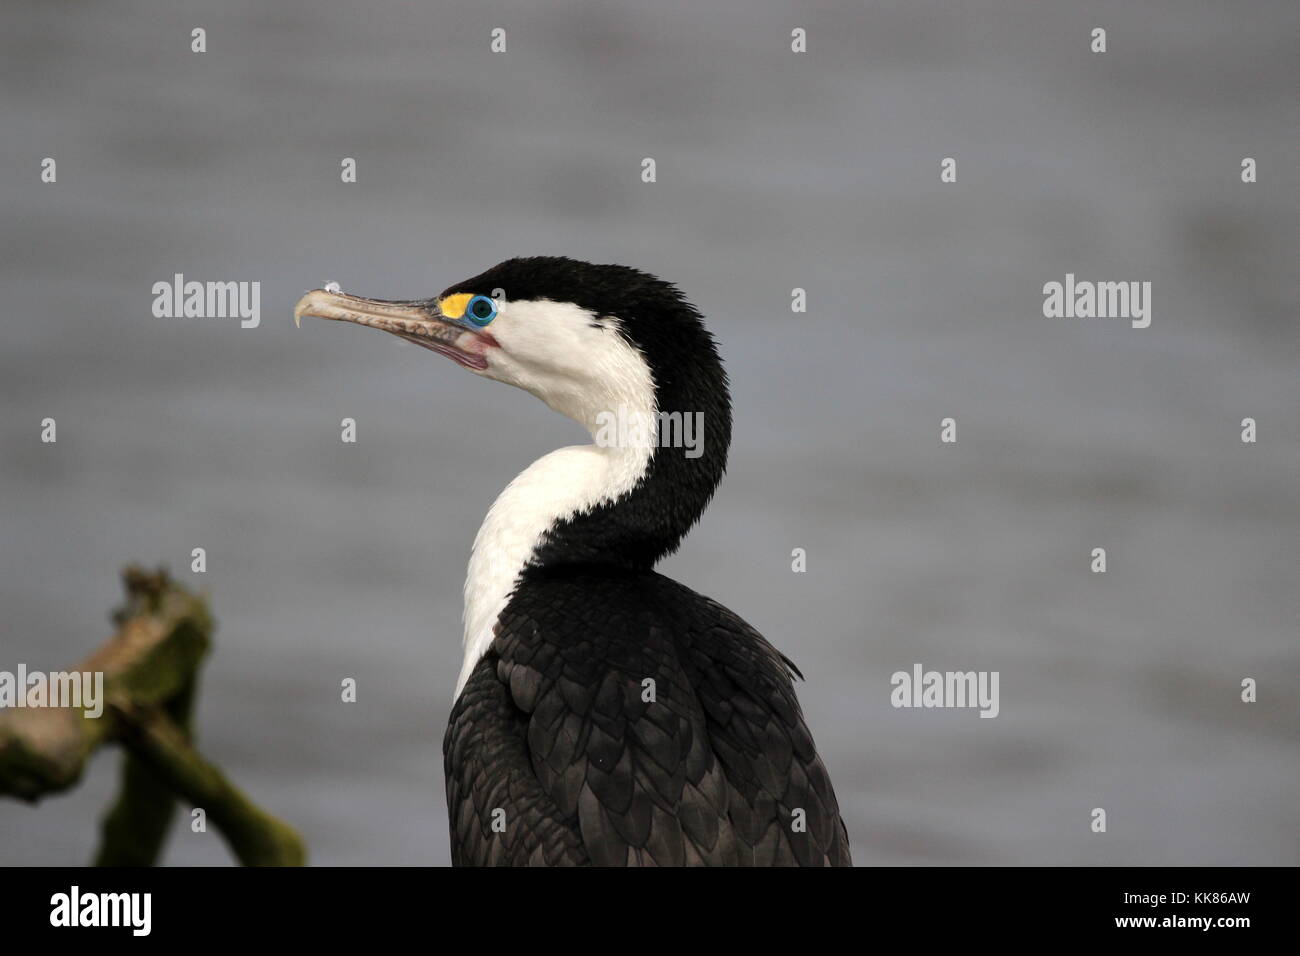 New Zealand pied shag (cormorant) Stock Photo